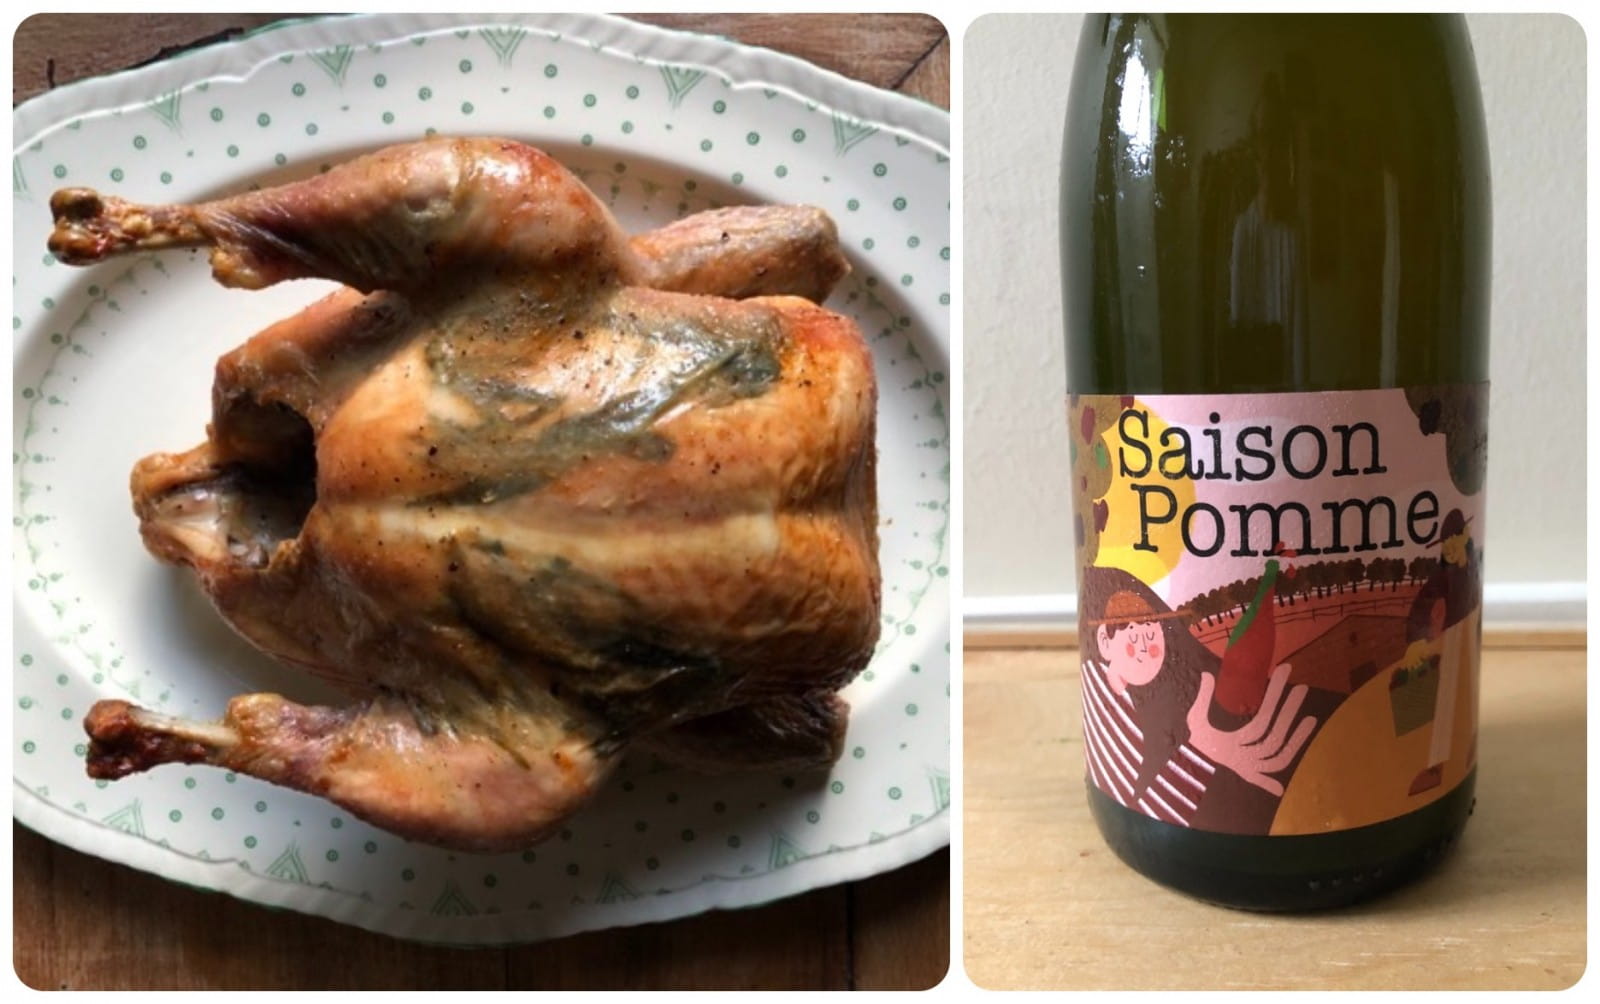  Roast chicken and ‘Saison’ cider